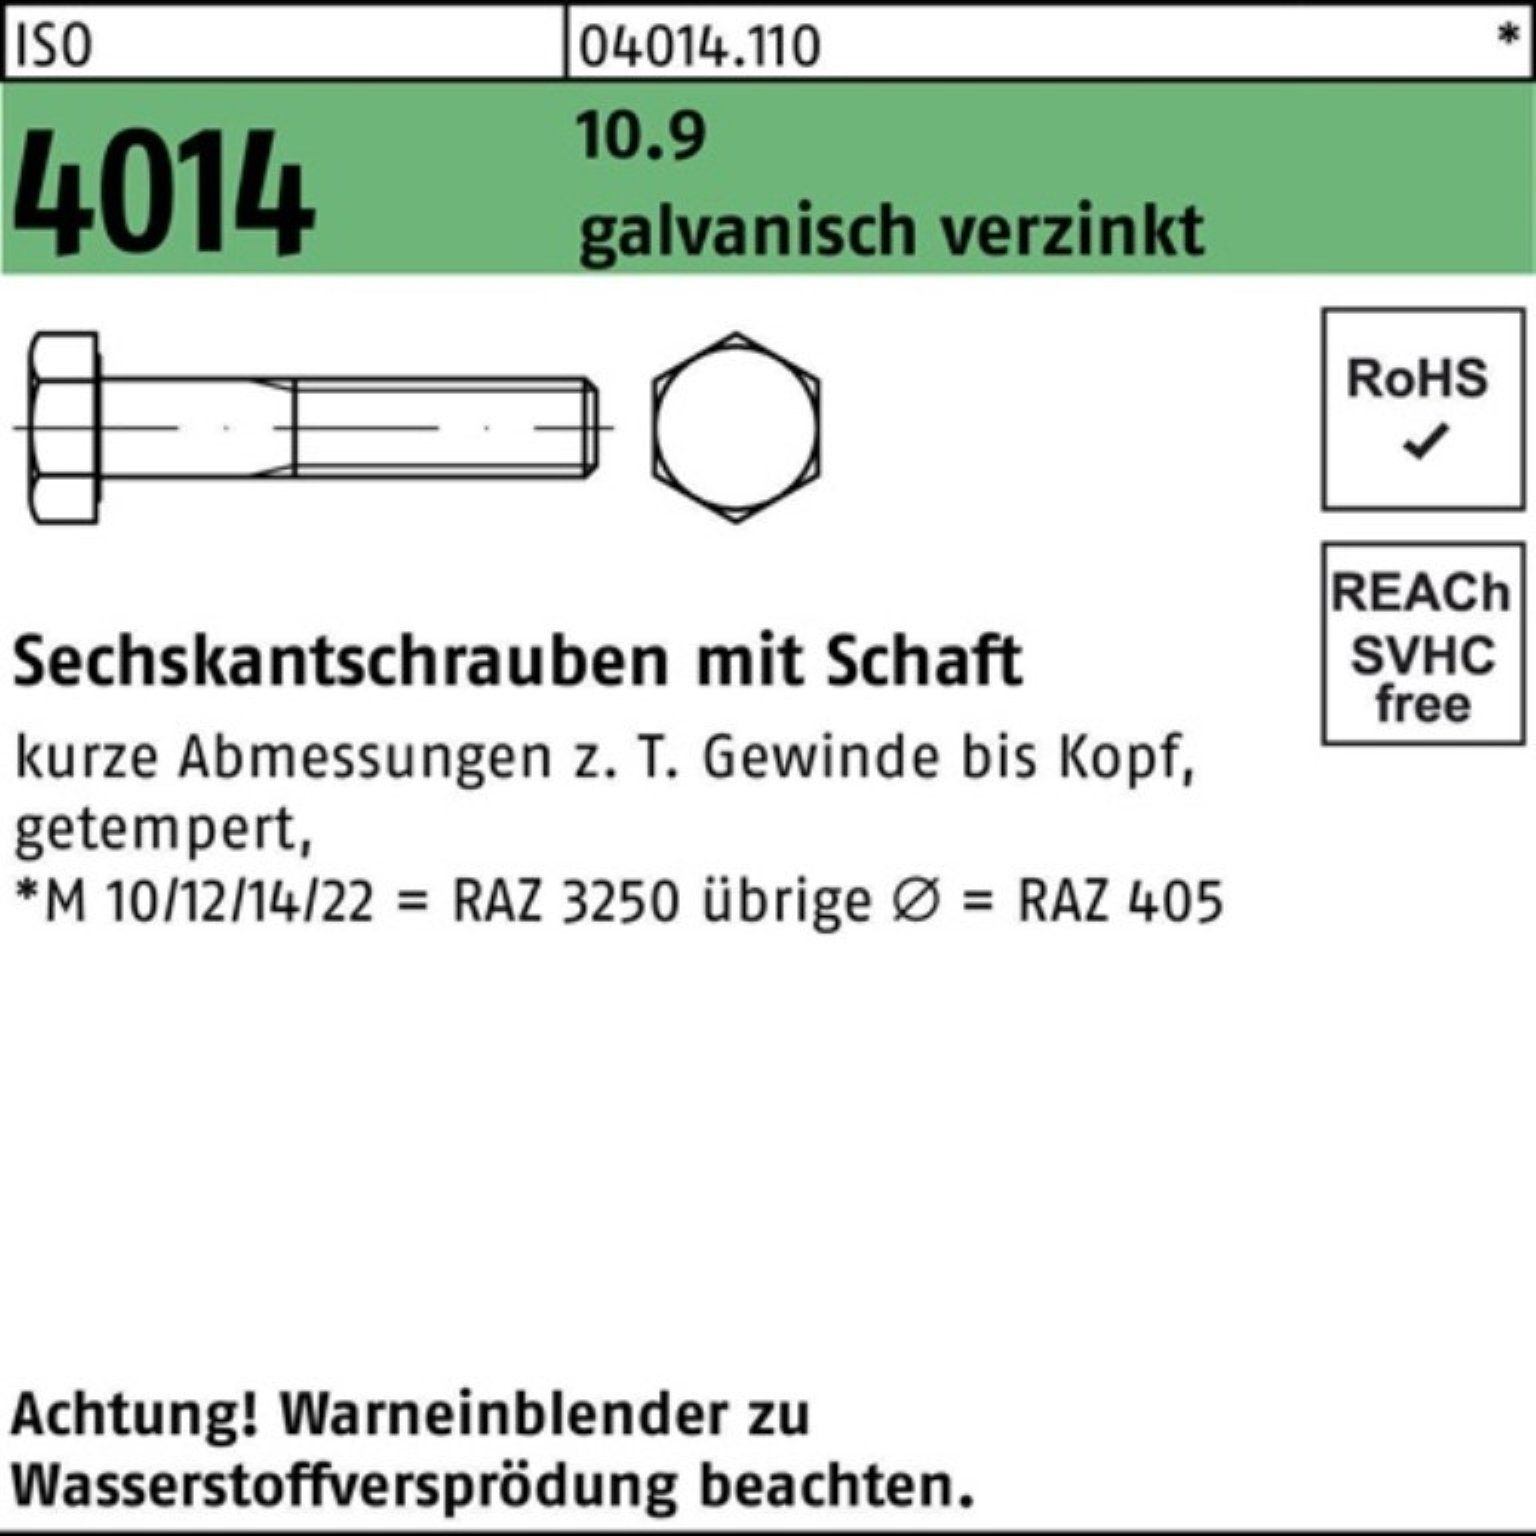 Bufab Sechskantschraube Pack 230 galv.verz. 4014 M30x Sechskantschraube ISO Schaft 100er 10.9